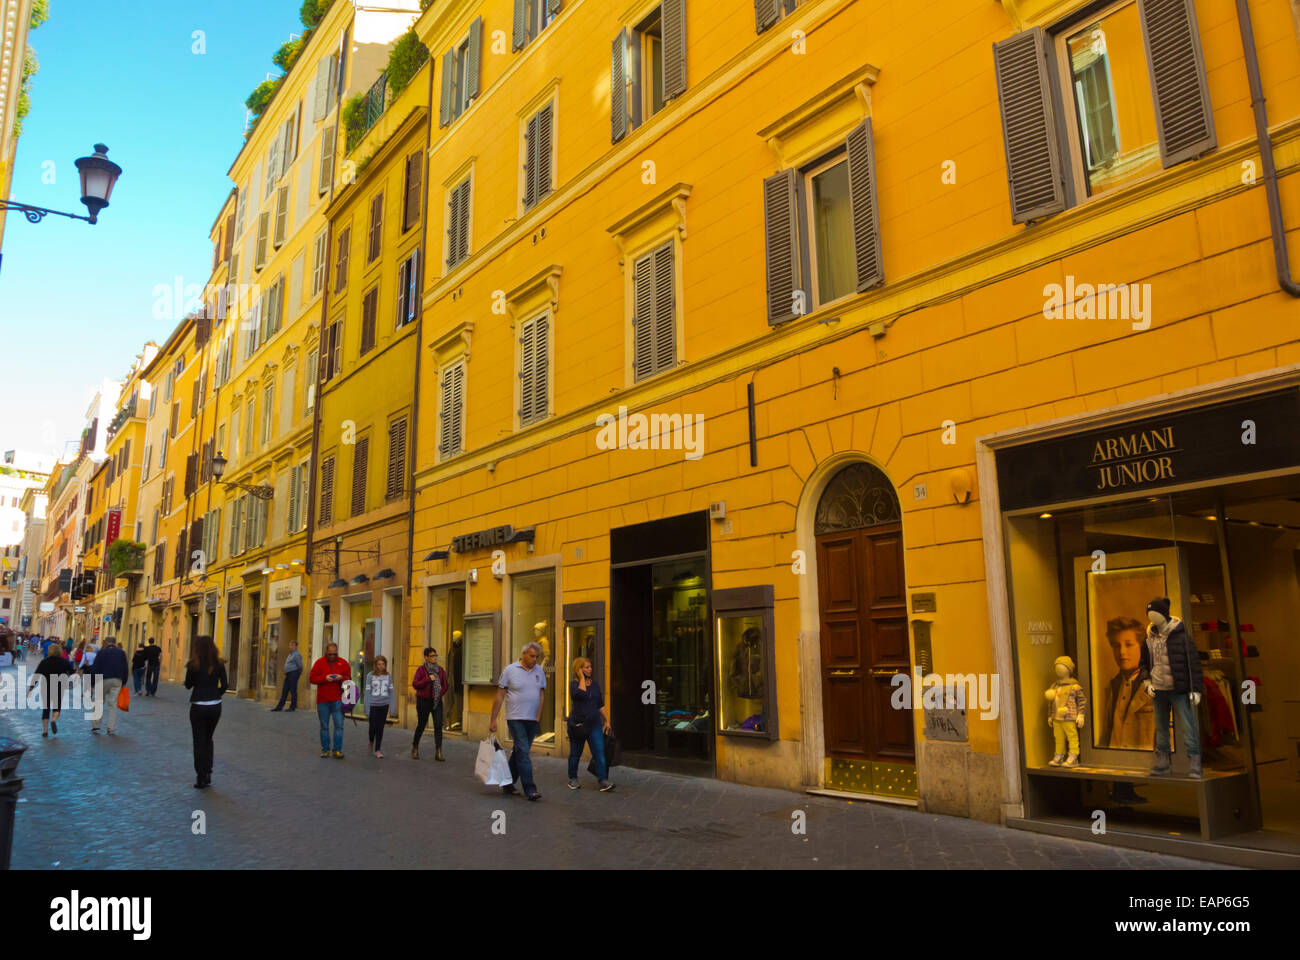 Via Frattina, centro storico, Rome, Italy Stock Photo